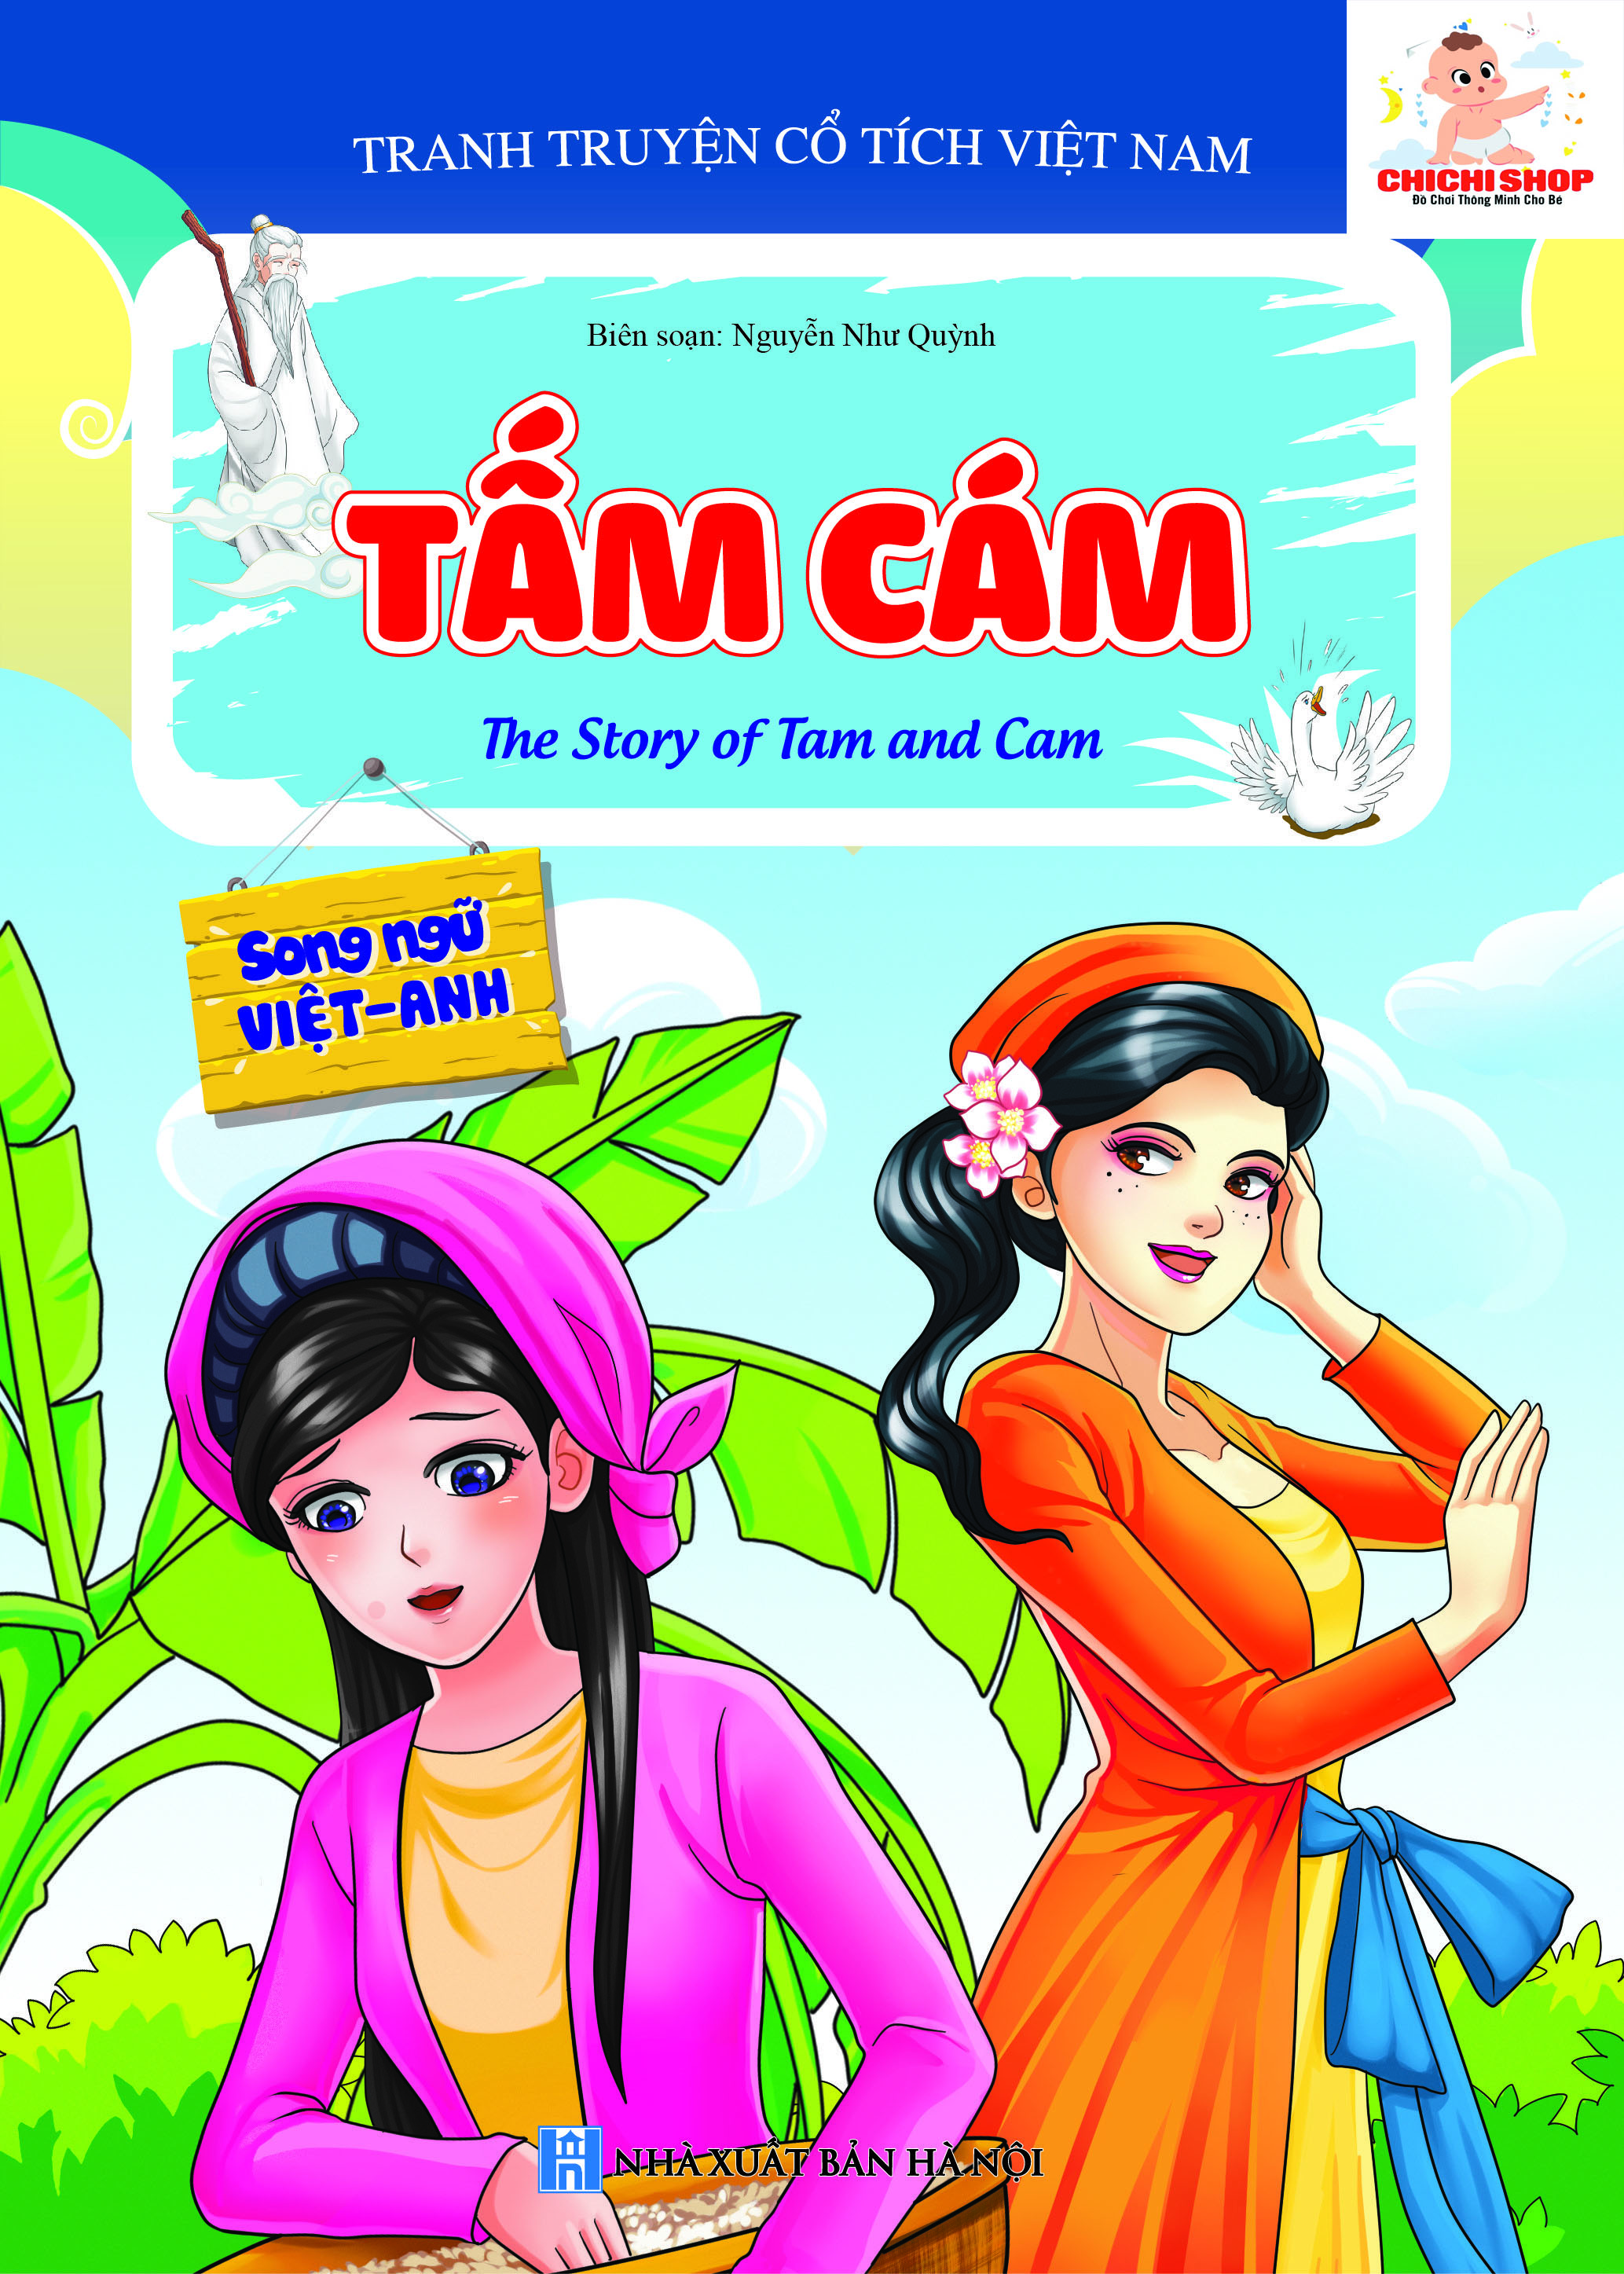 Set 10 Cuốn Truyện Cổ Tích Song Ngữ Anh Việt Cho Bé